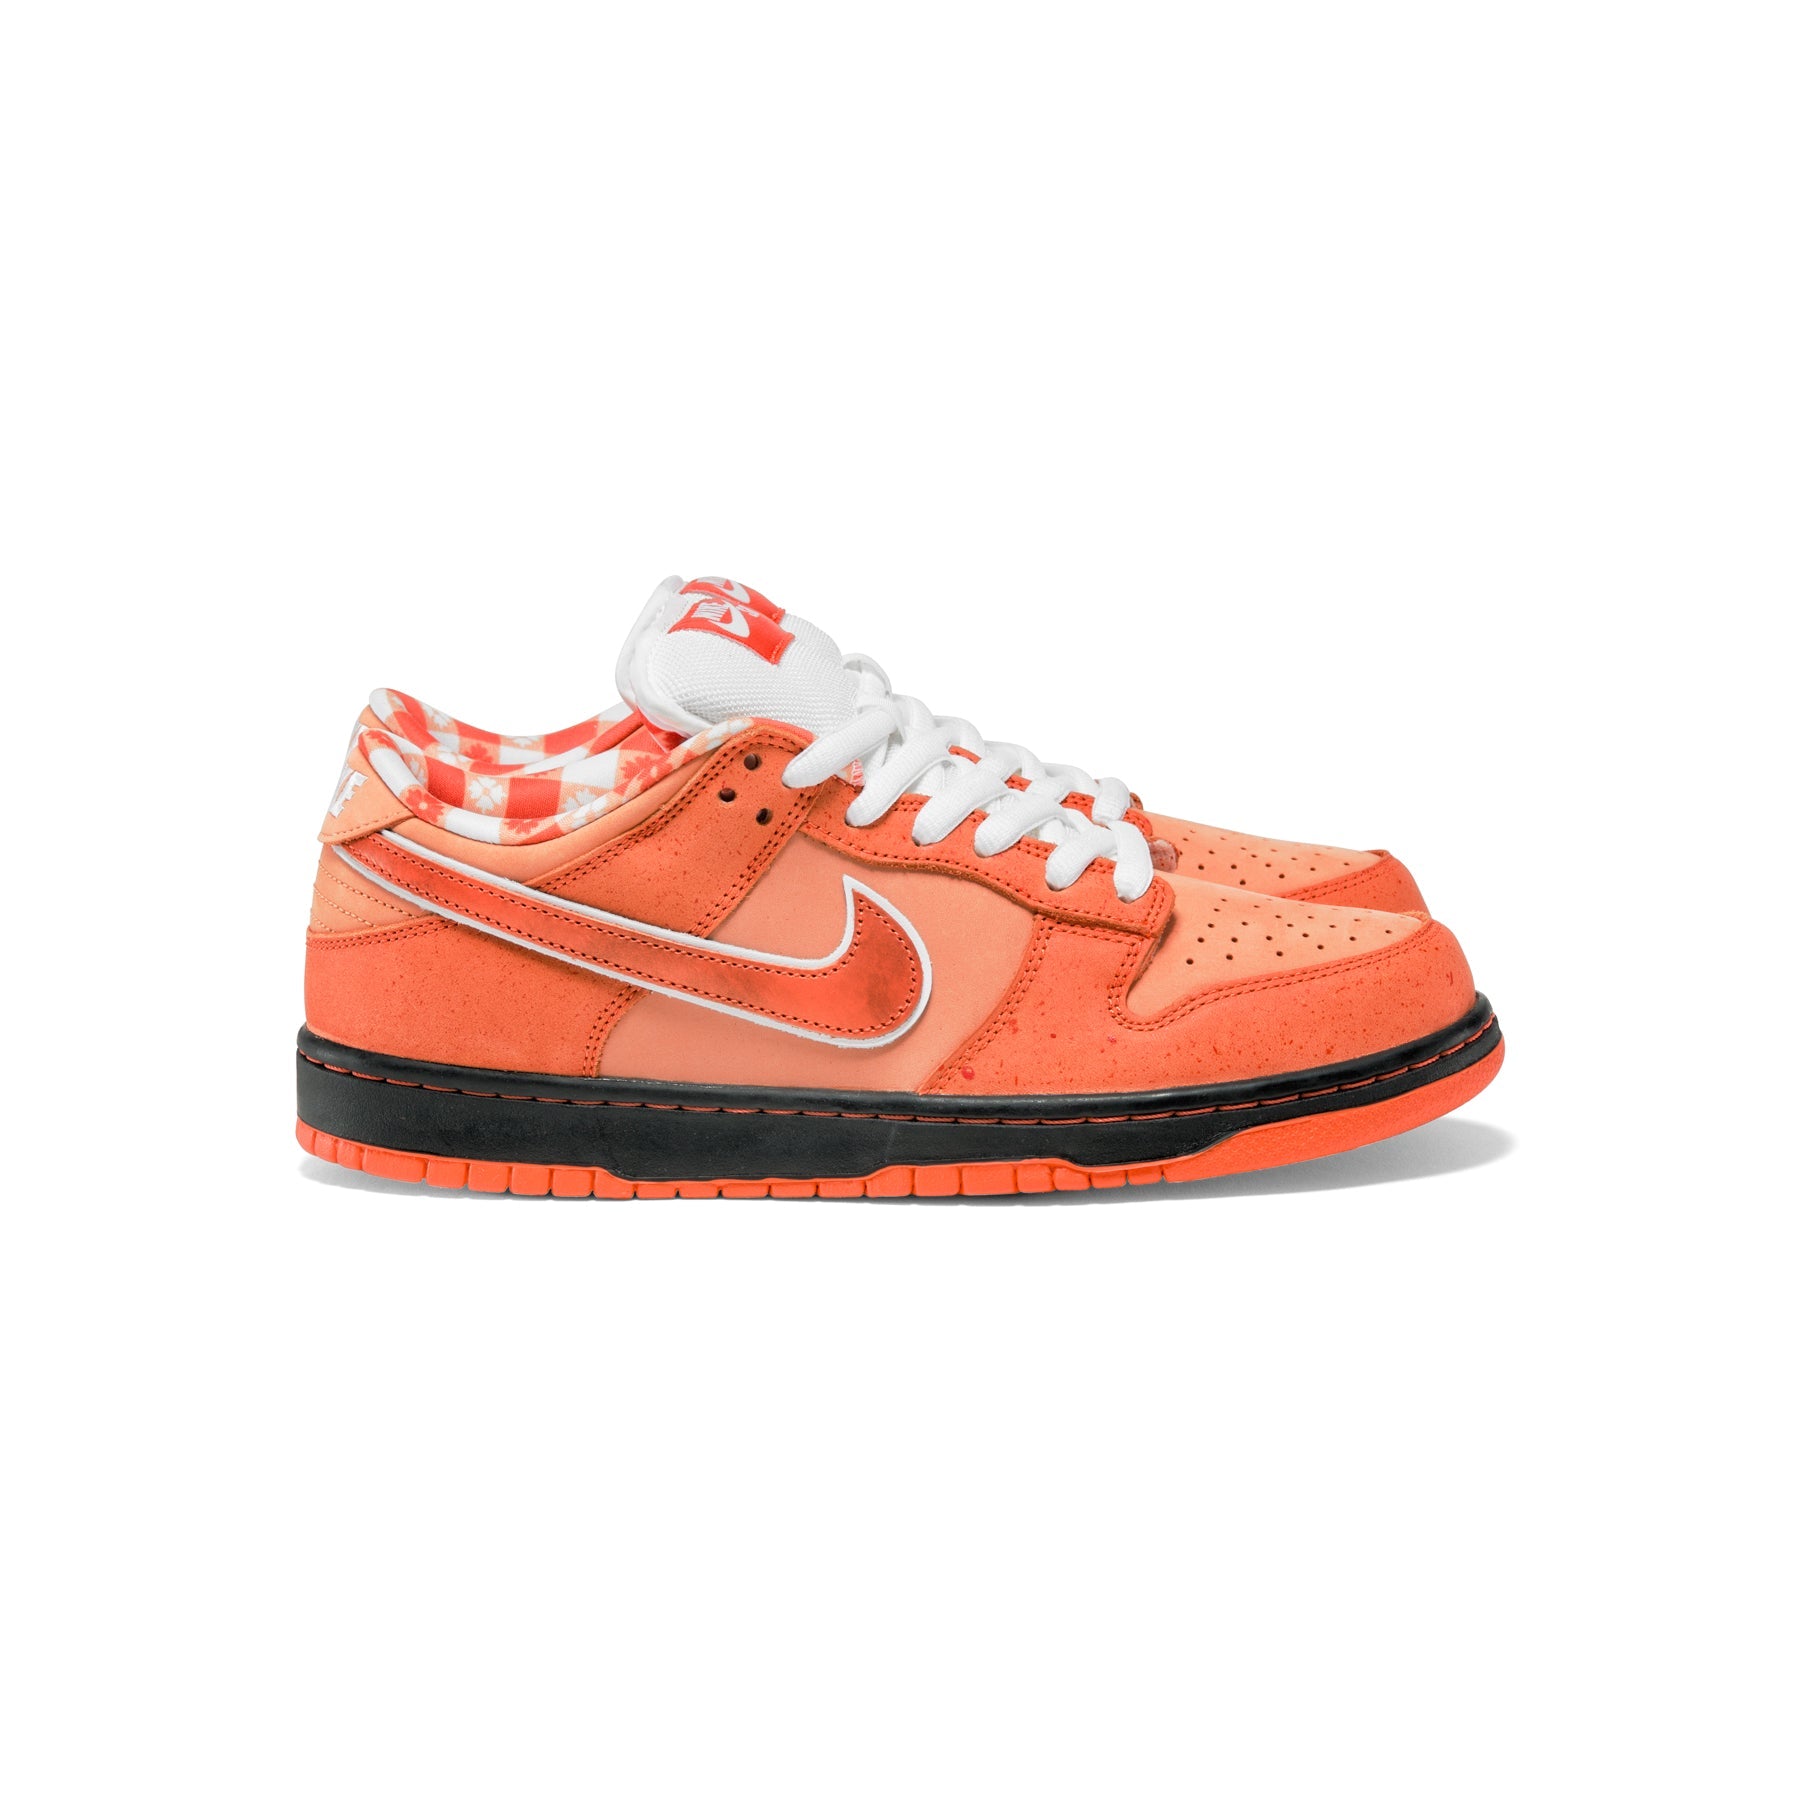 Concepts x Nike SB Dunk Low (Orange Frost/Electro Orange/White ...